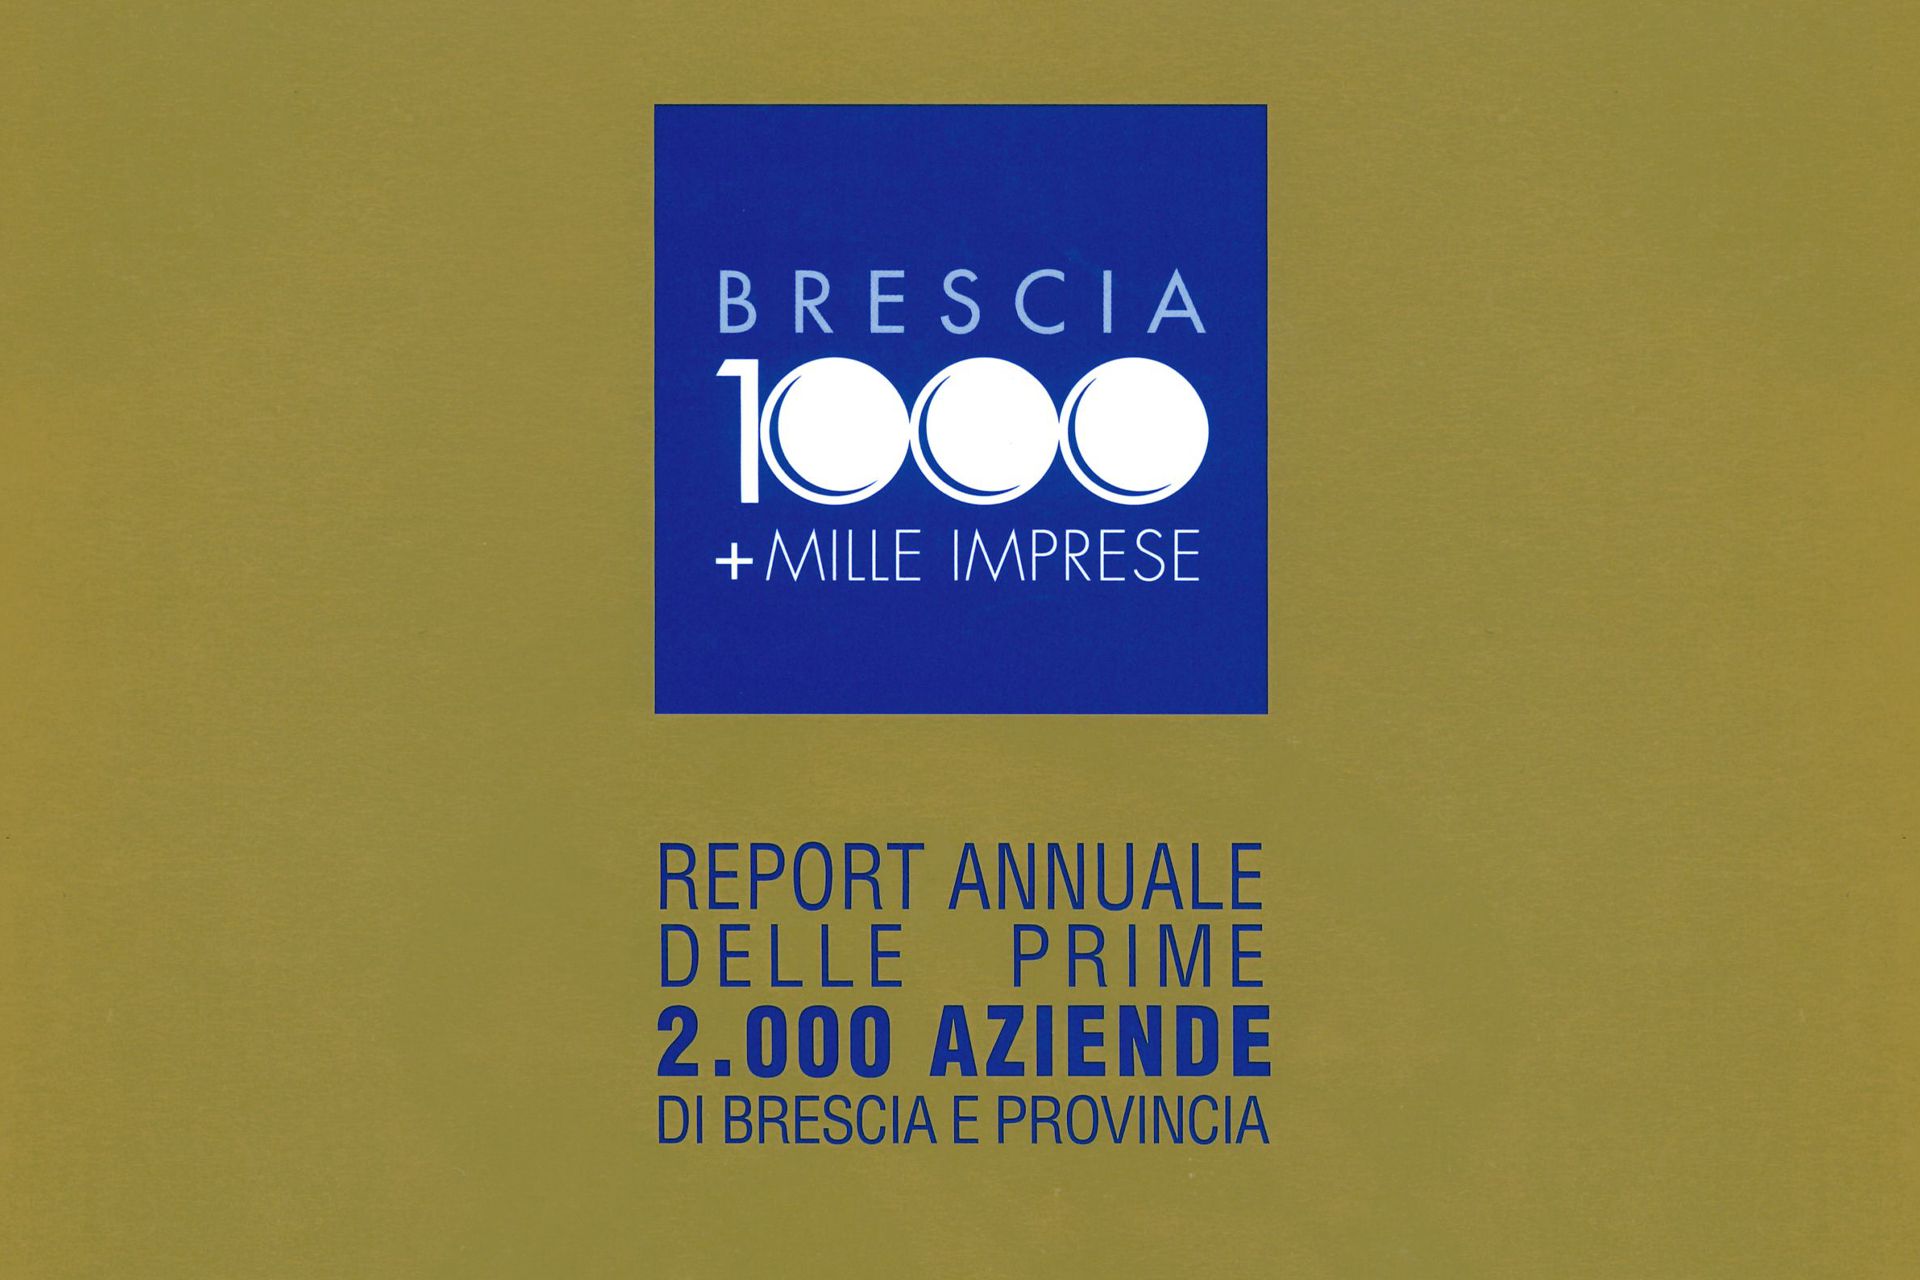 brescia-1000-imprese-2021-editorial